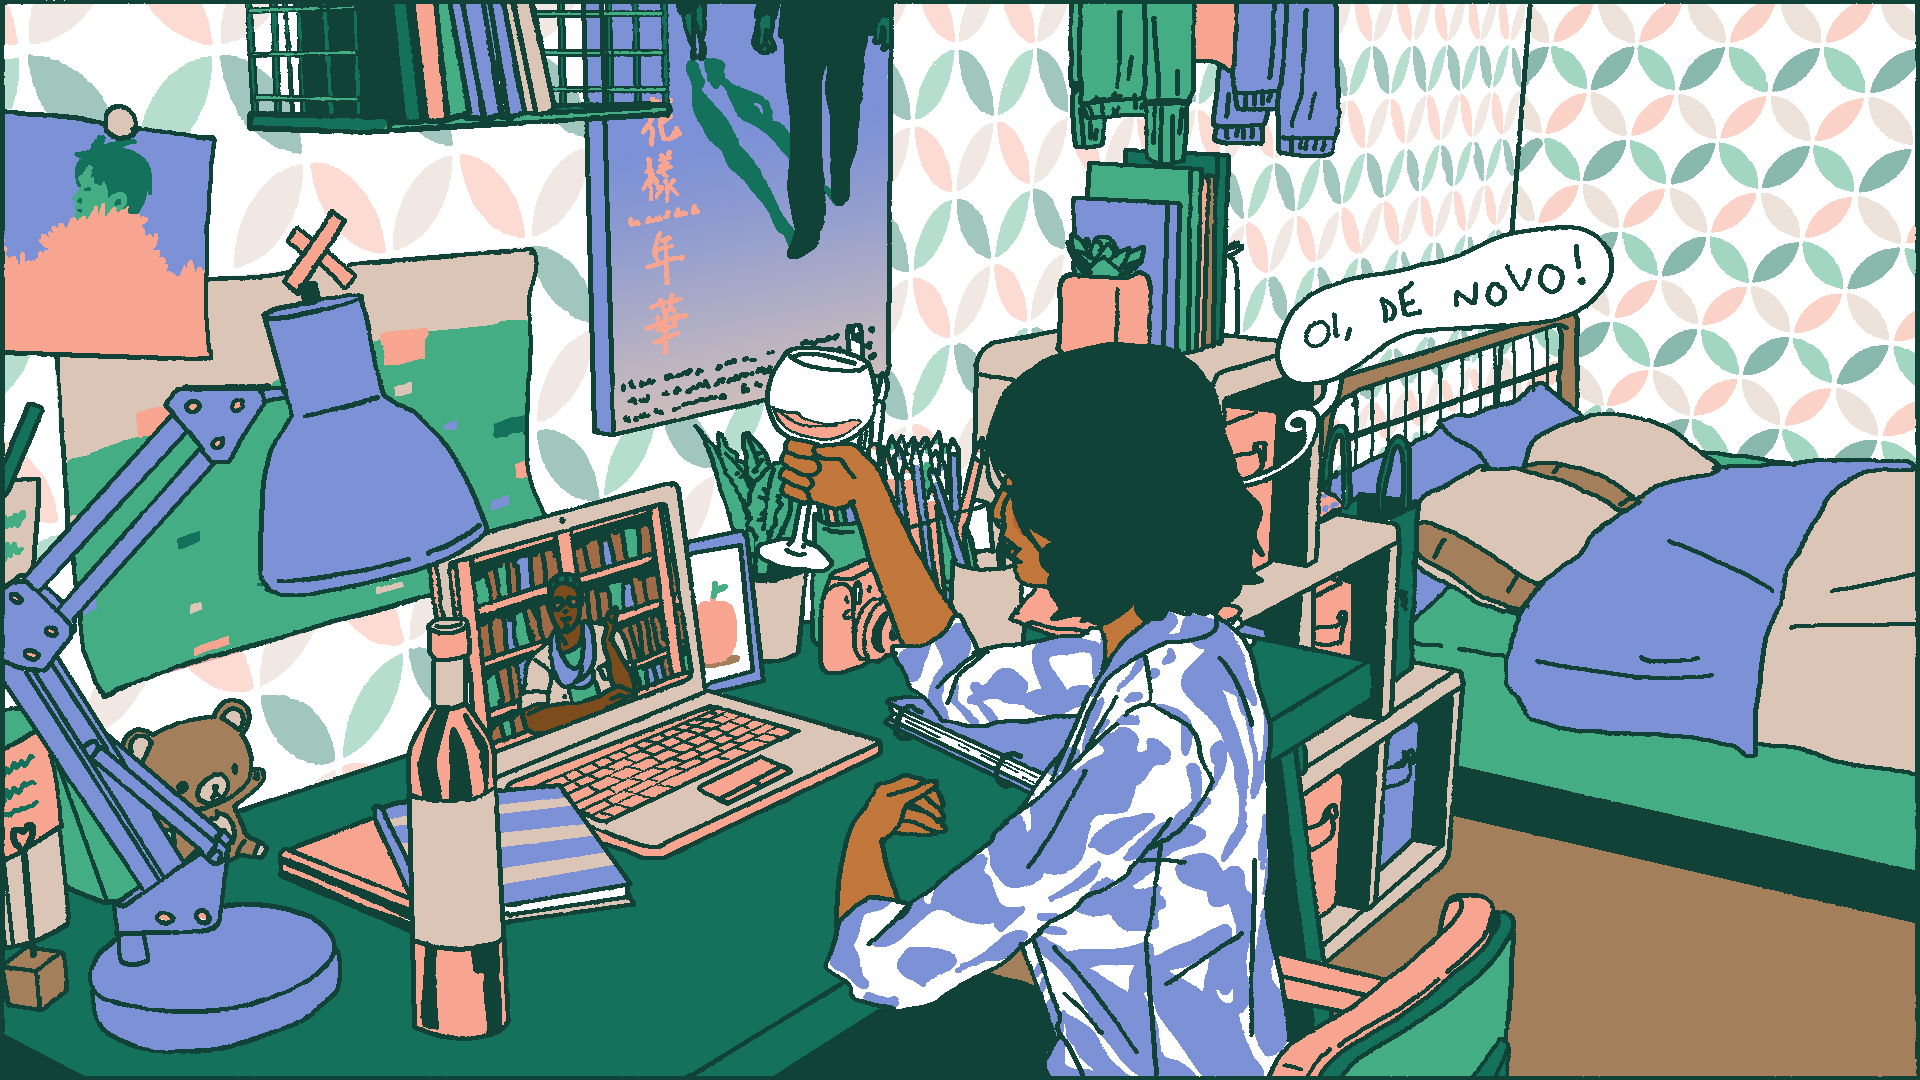 Ilustração de uma menina com uma taça de vinho na mão, com o notebook ligado na escrivaninha de seu quarto, dizendo "Oi, de novo!" em uma videochamada